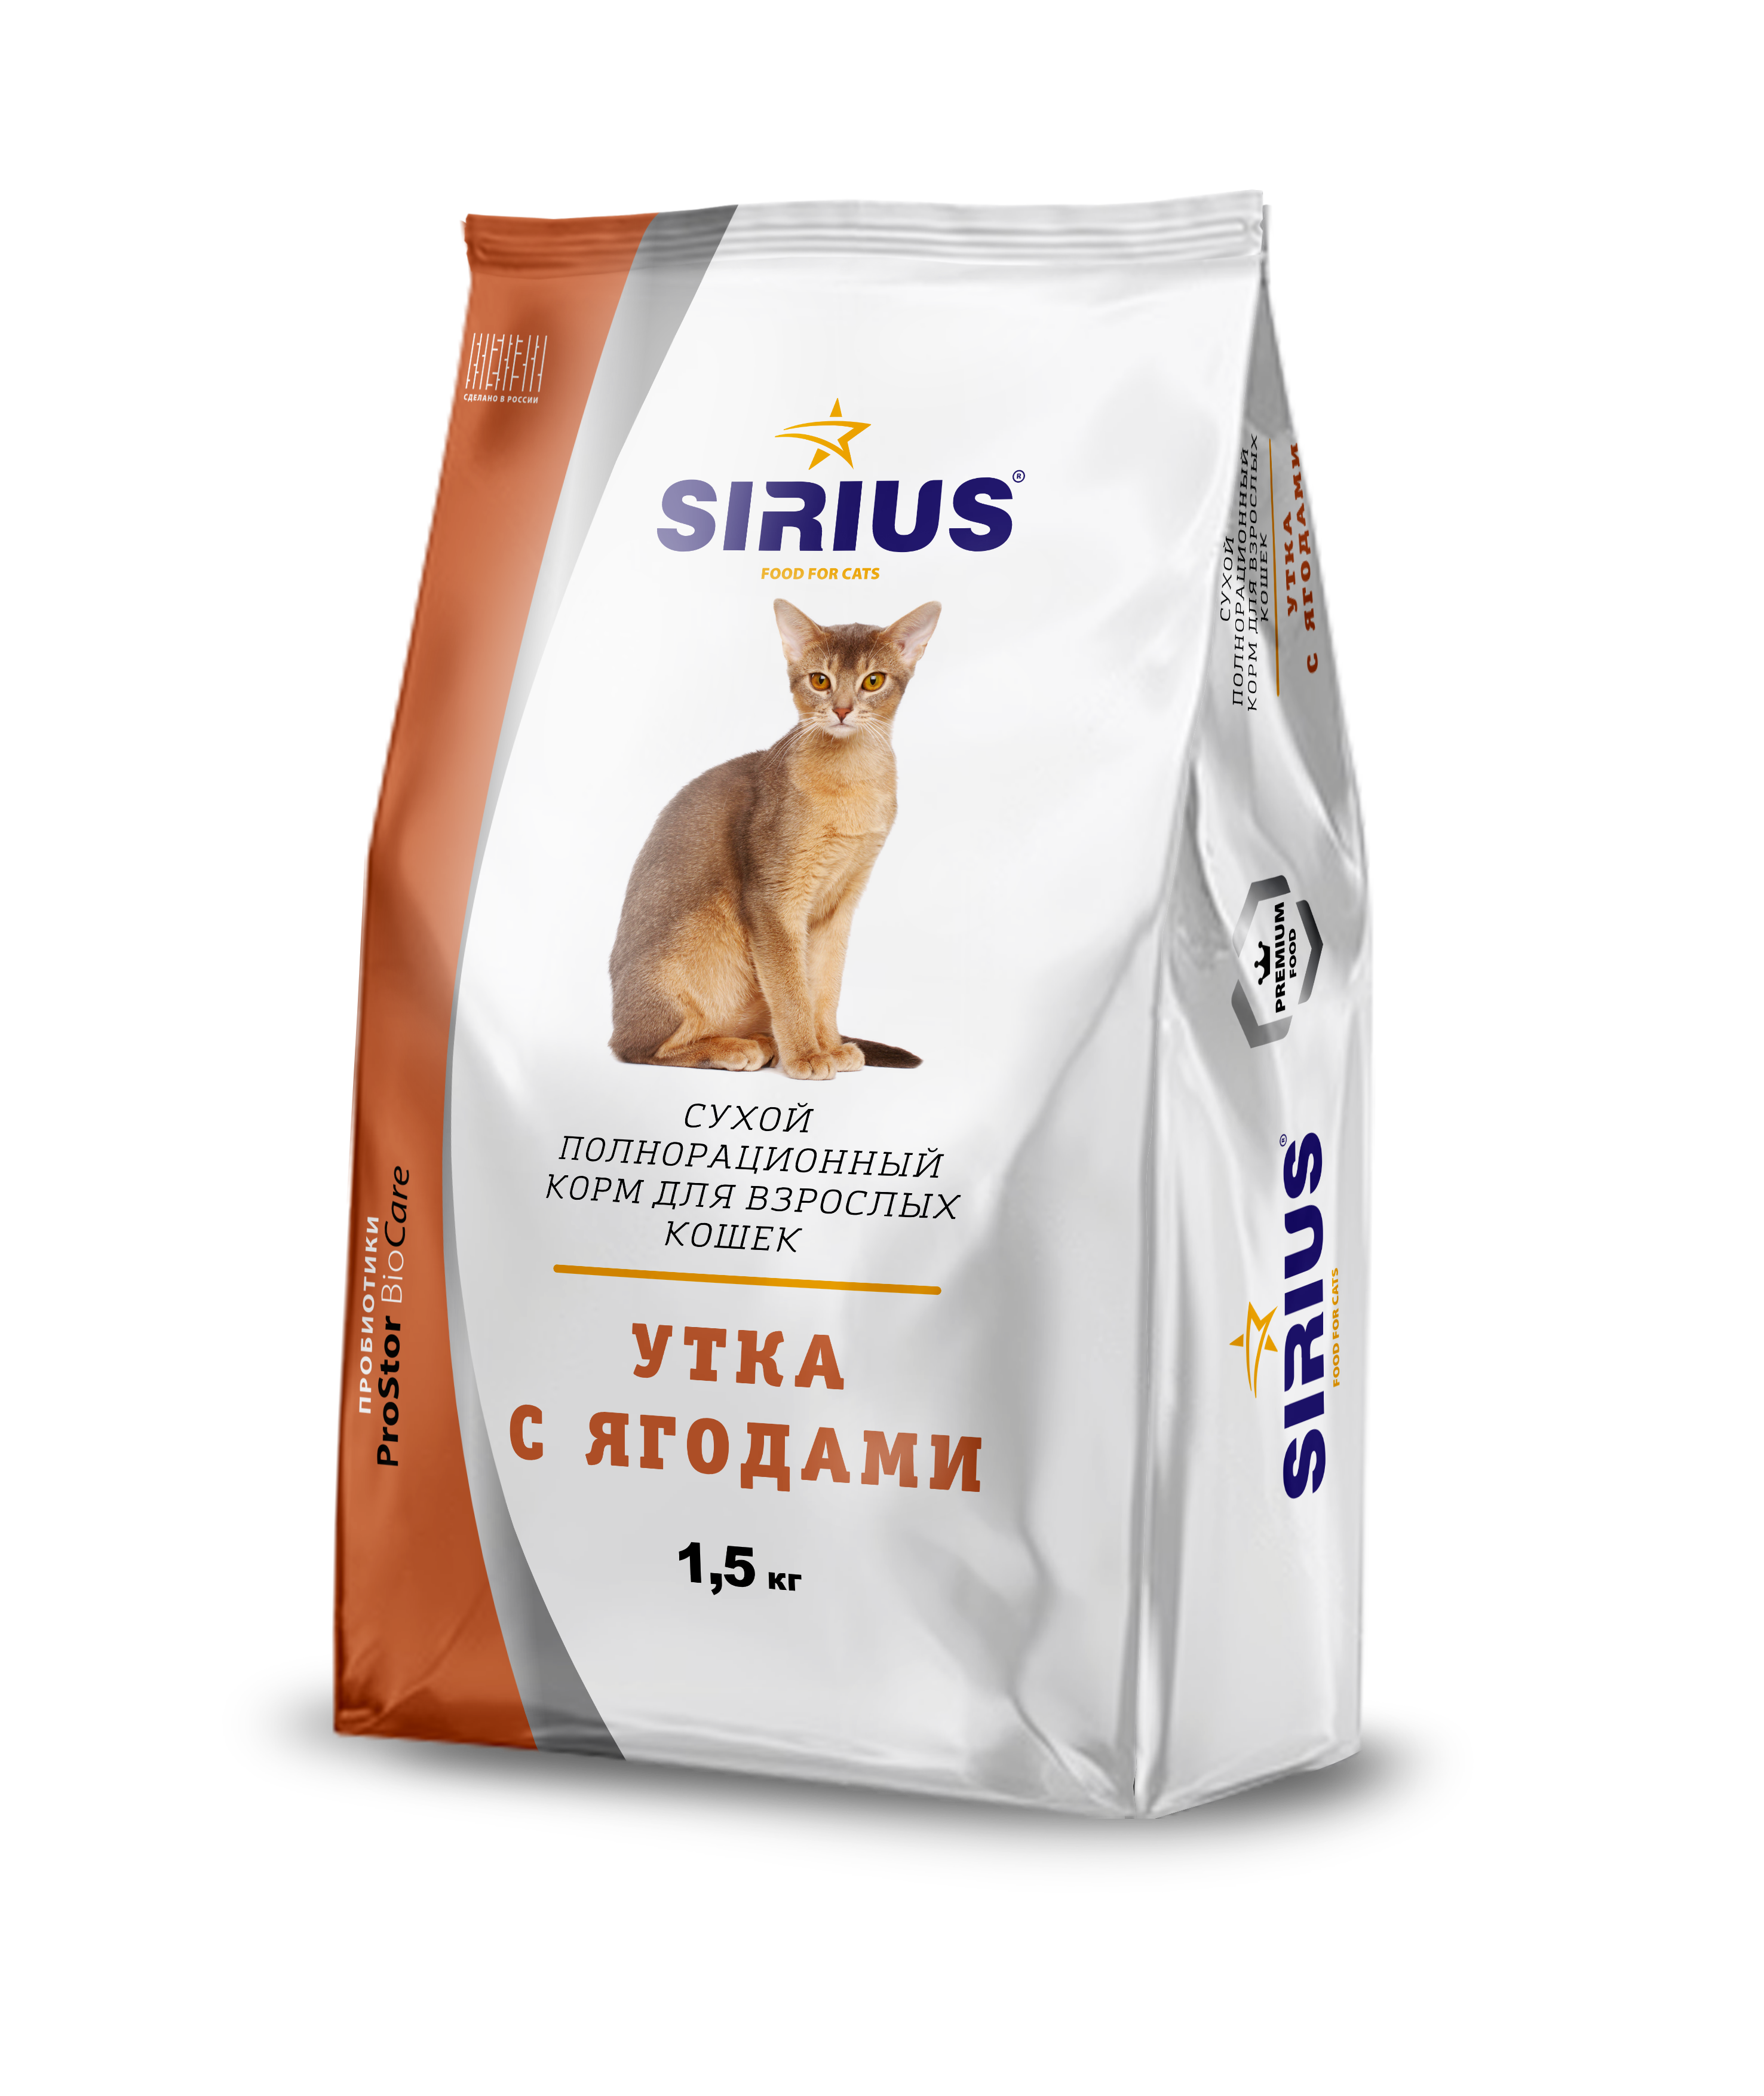 Купить сириус для кошек 10. Сириус корм для кошек. Сухой полнорационный корм Сириус для кошек 10 кг. Корм для кошек Sirius мясной рацион для взрослых кошек 1.5 кг. Корм Сириус 1,5 кг для кошек.